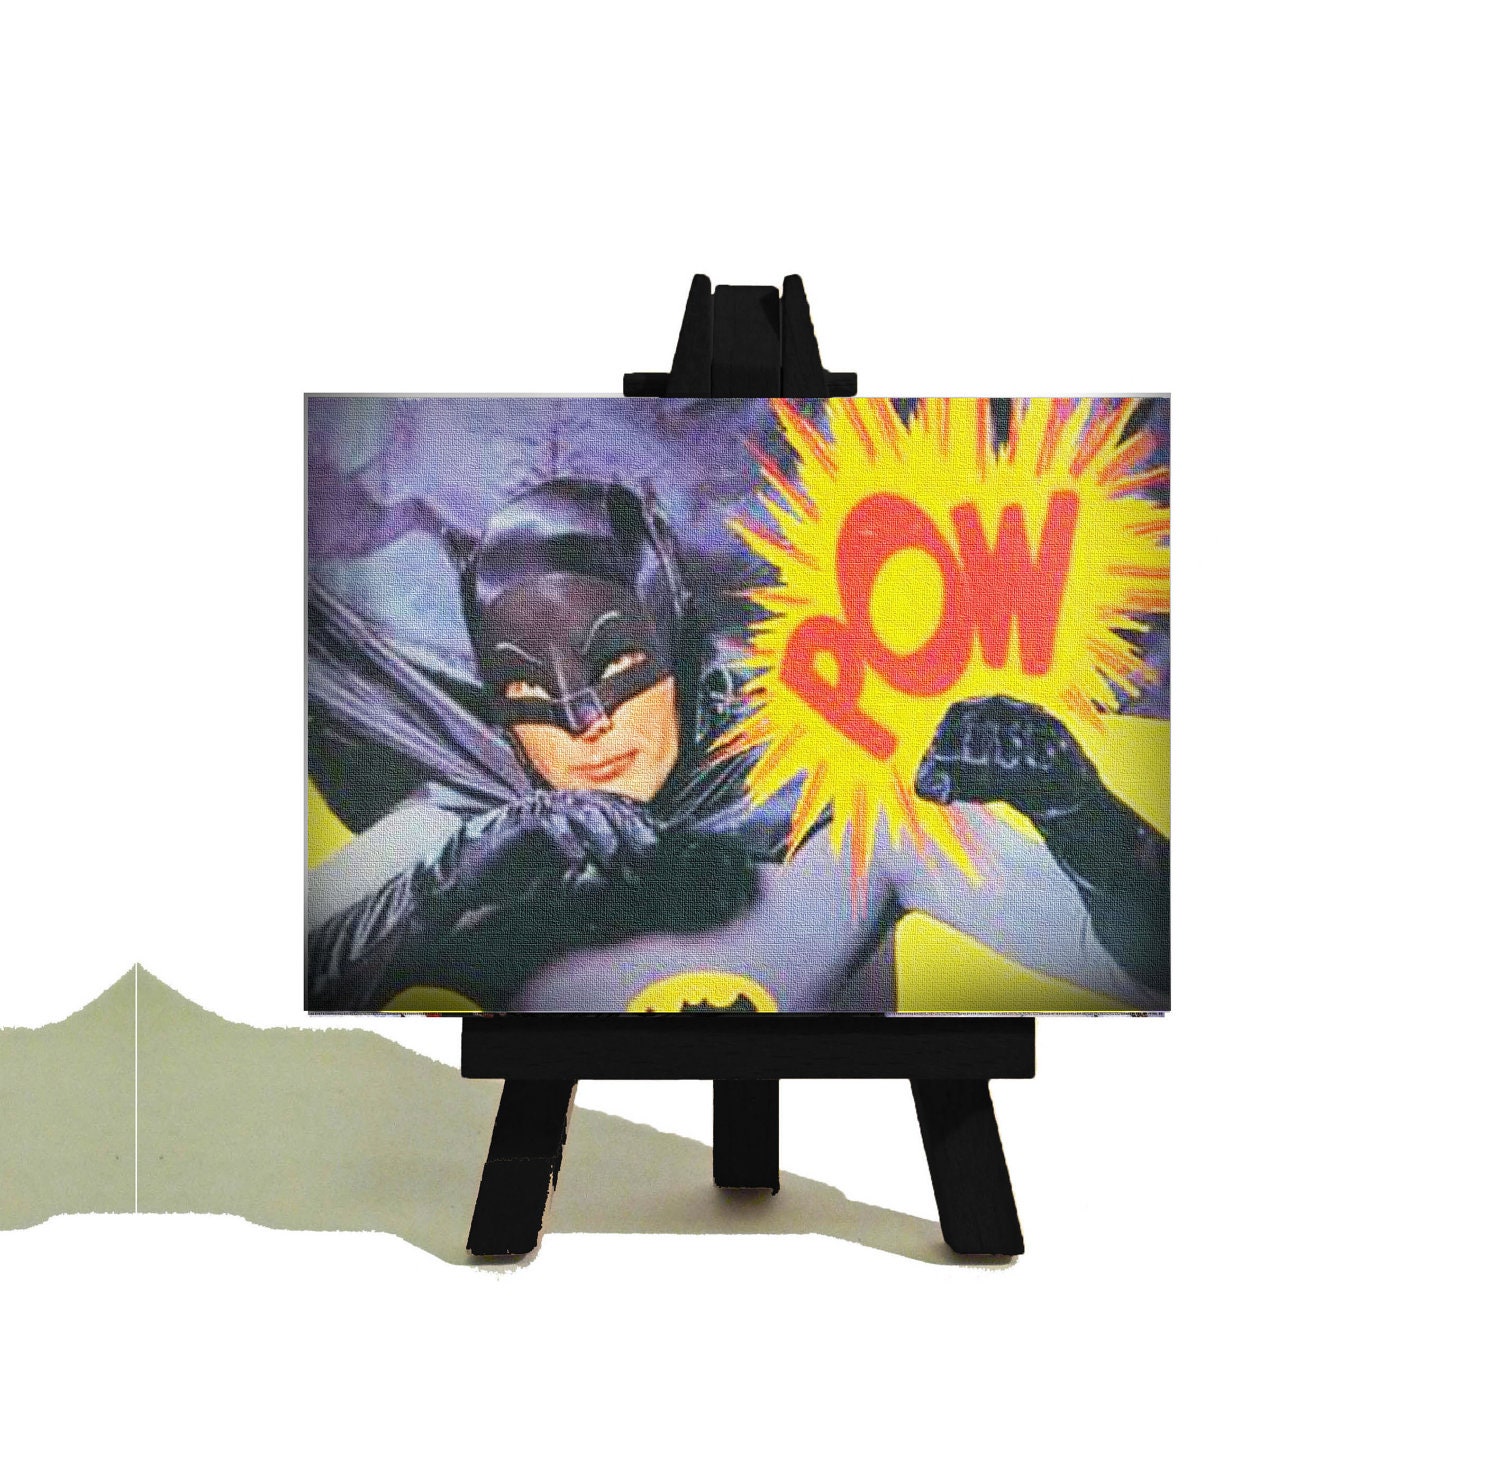 Batman Pow Images